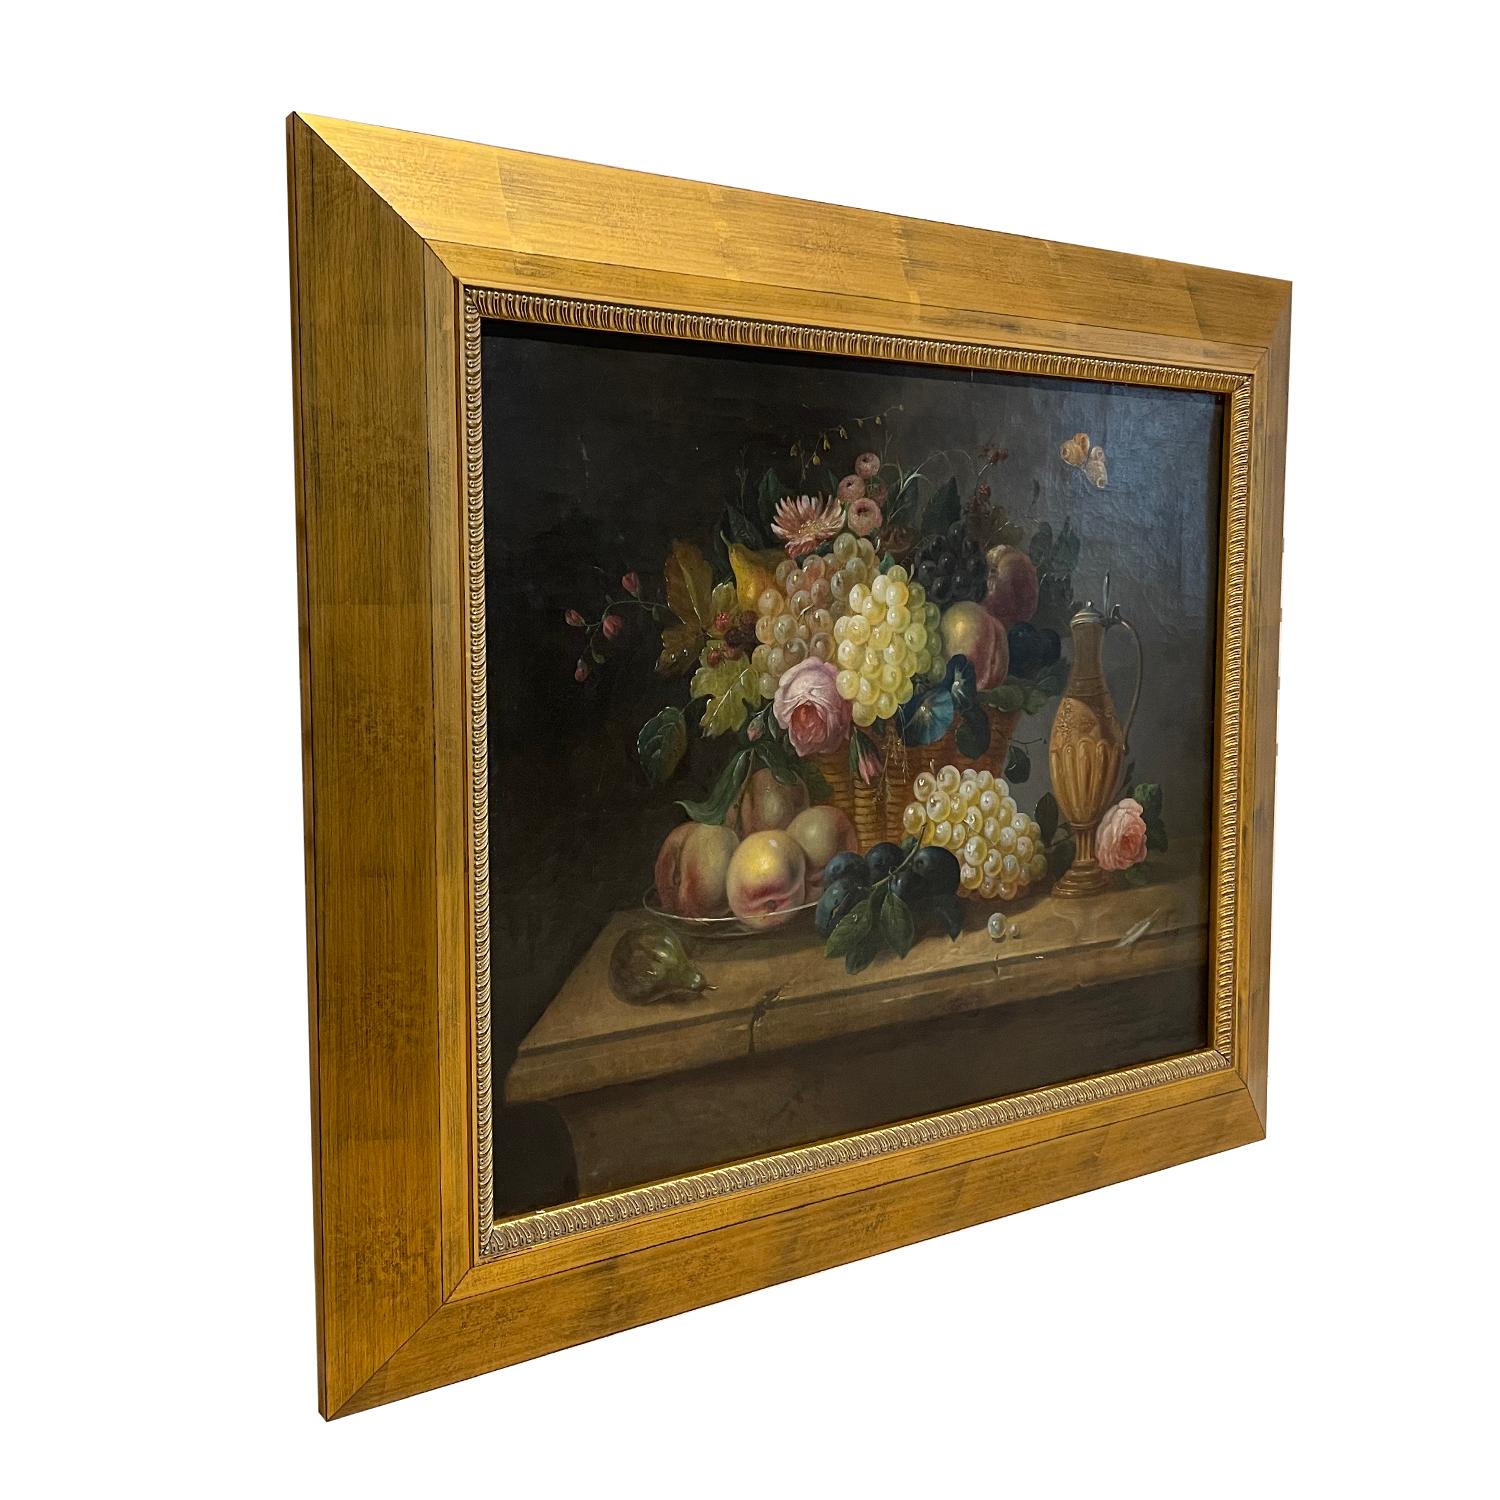 Ein hellgraues, schwarzes Ölgemälde auf Leinwand mit Blumen und Früchten, gemalt von Eduard Wuger in gutem Zustand. Das farbenfrohe antike österreichische Gemälde zeigt einen runden geflochtenen Korb mit vielen Früchten, der auf einem hölzernen